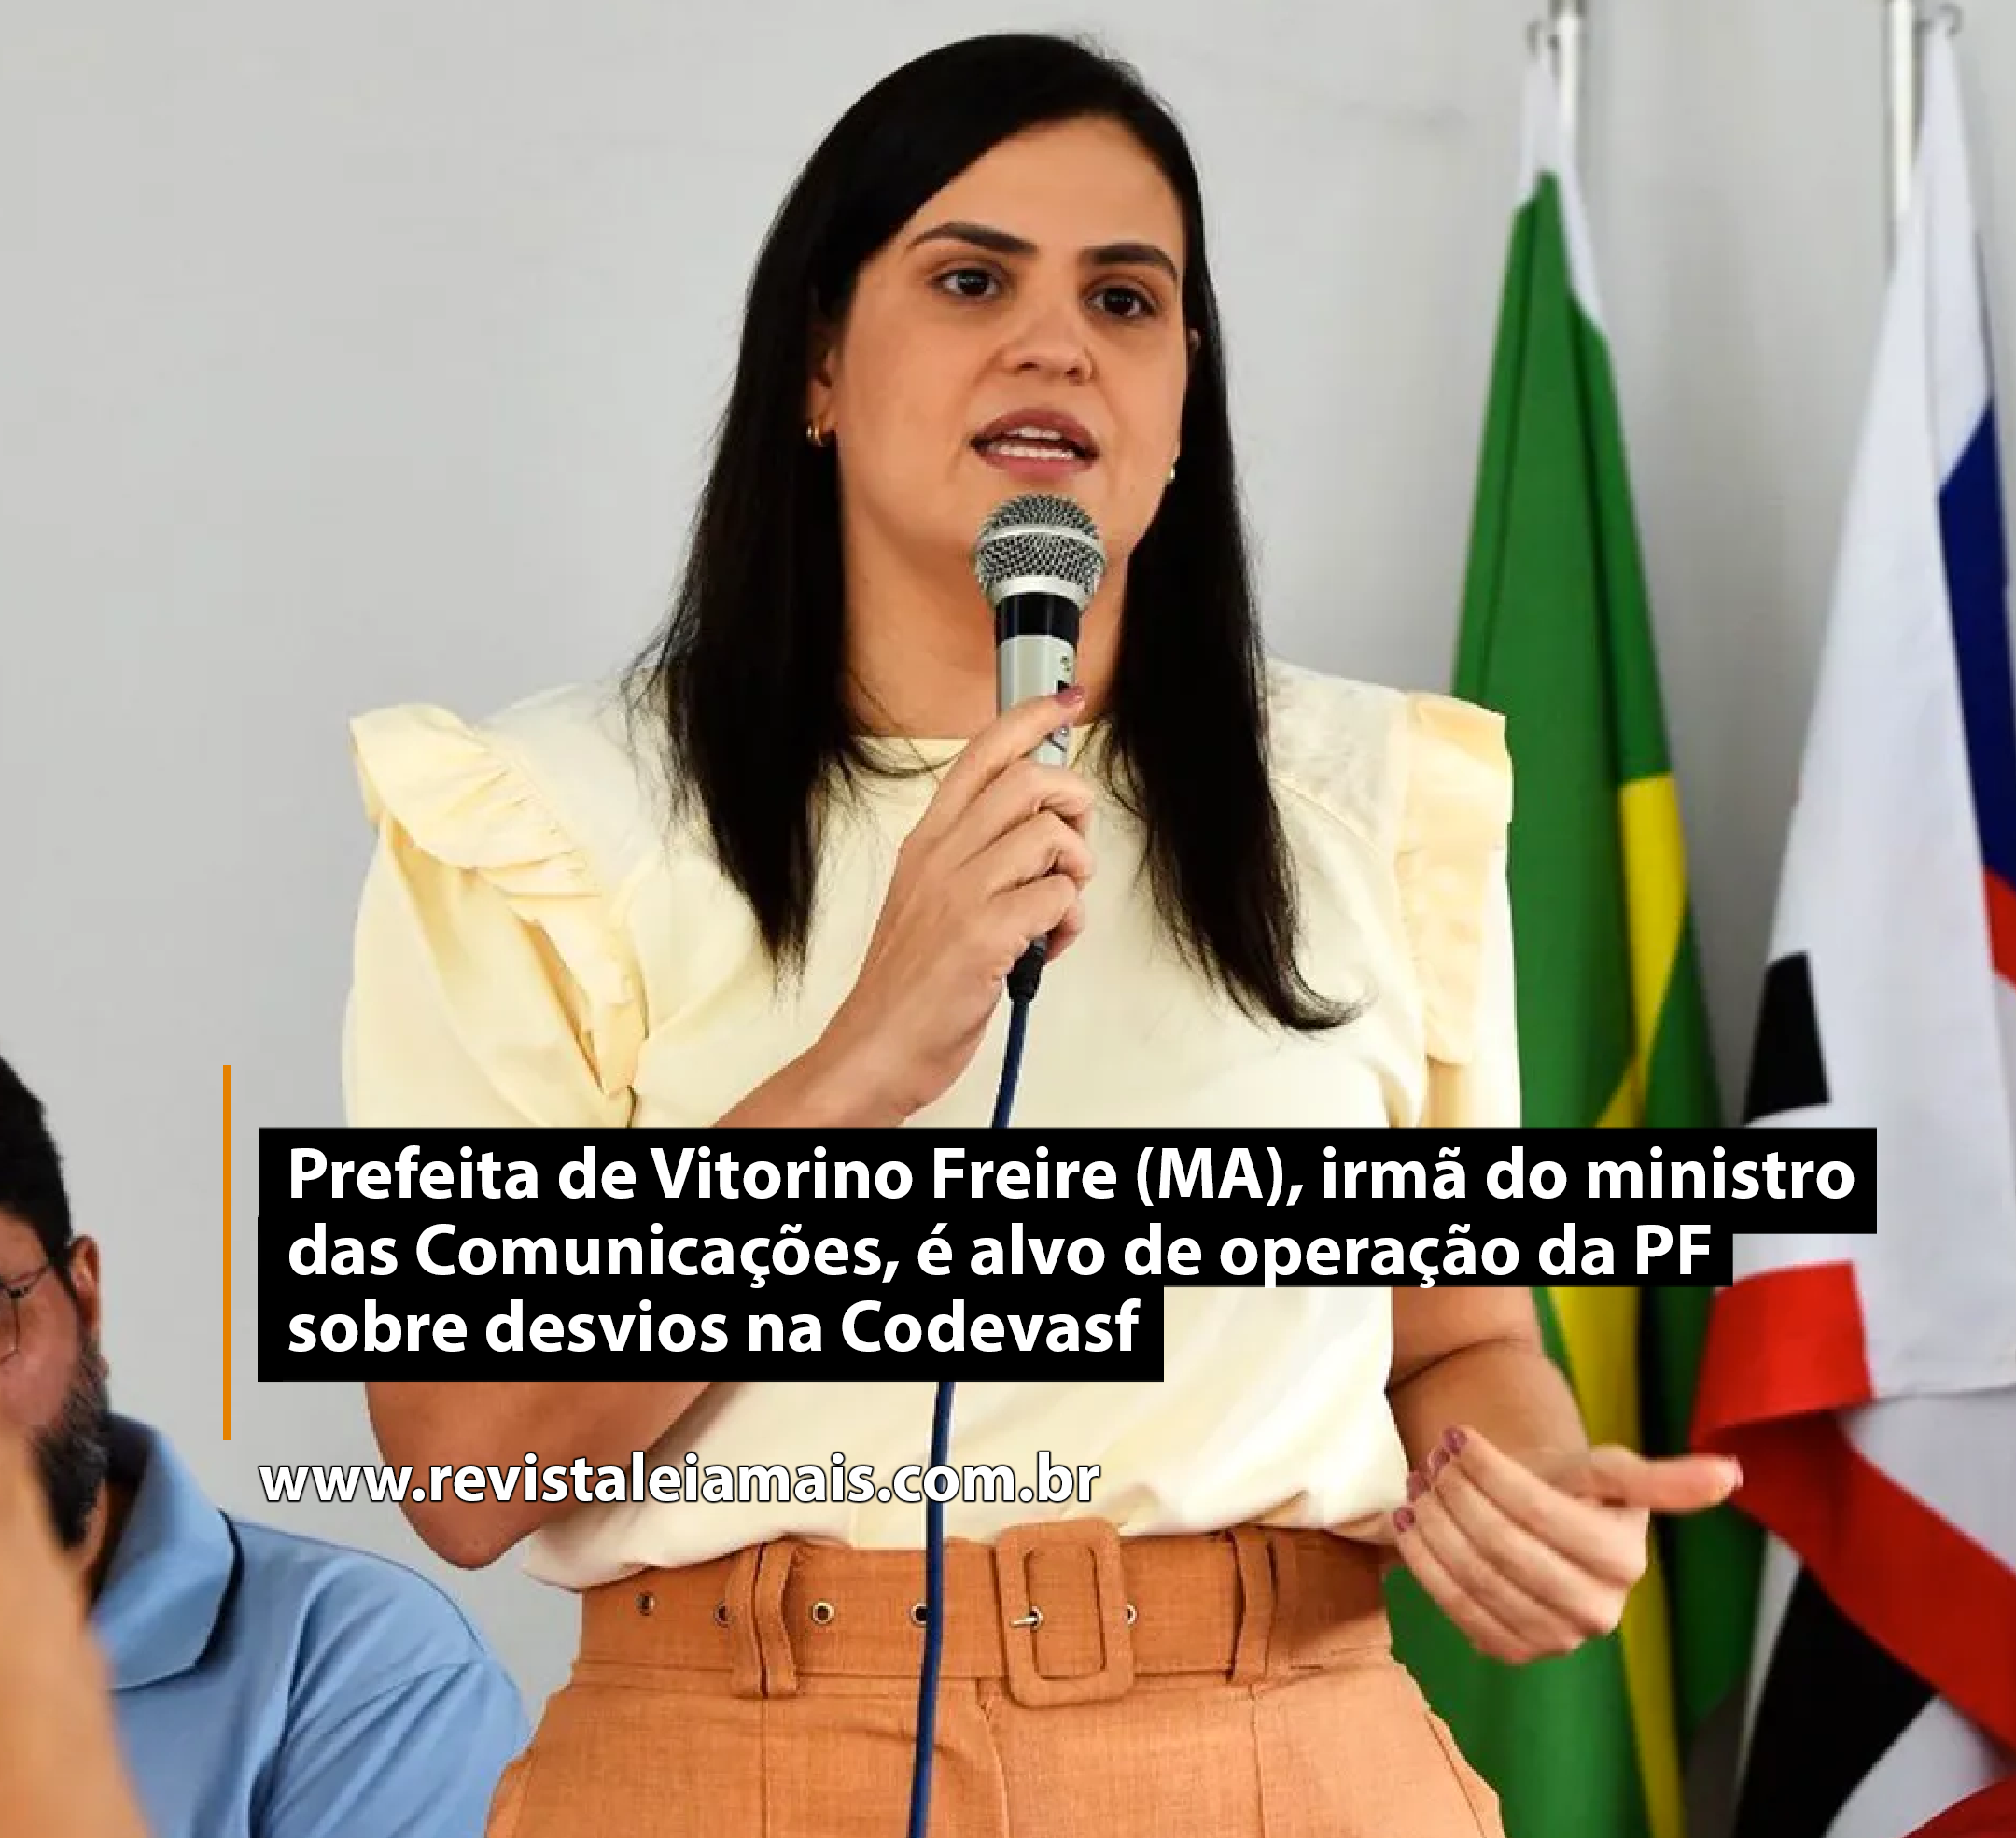 Prefeita de Vitorino Freire (MA), irmã do ministro das Comunicações, é alvo de operação da PF sobre desvios na Codevasf